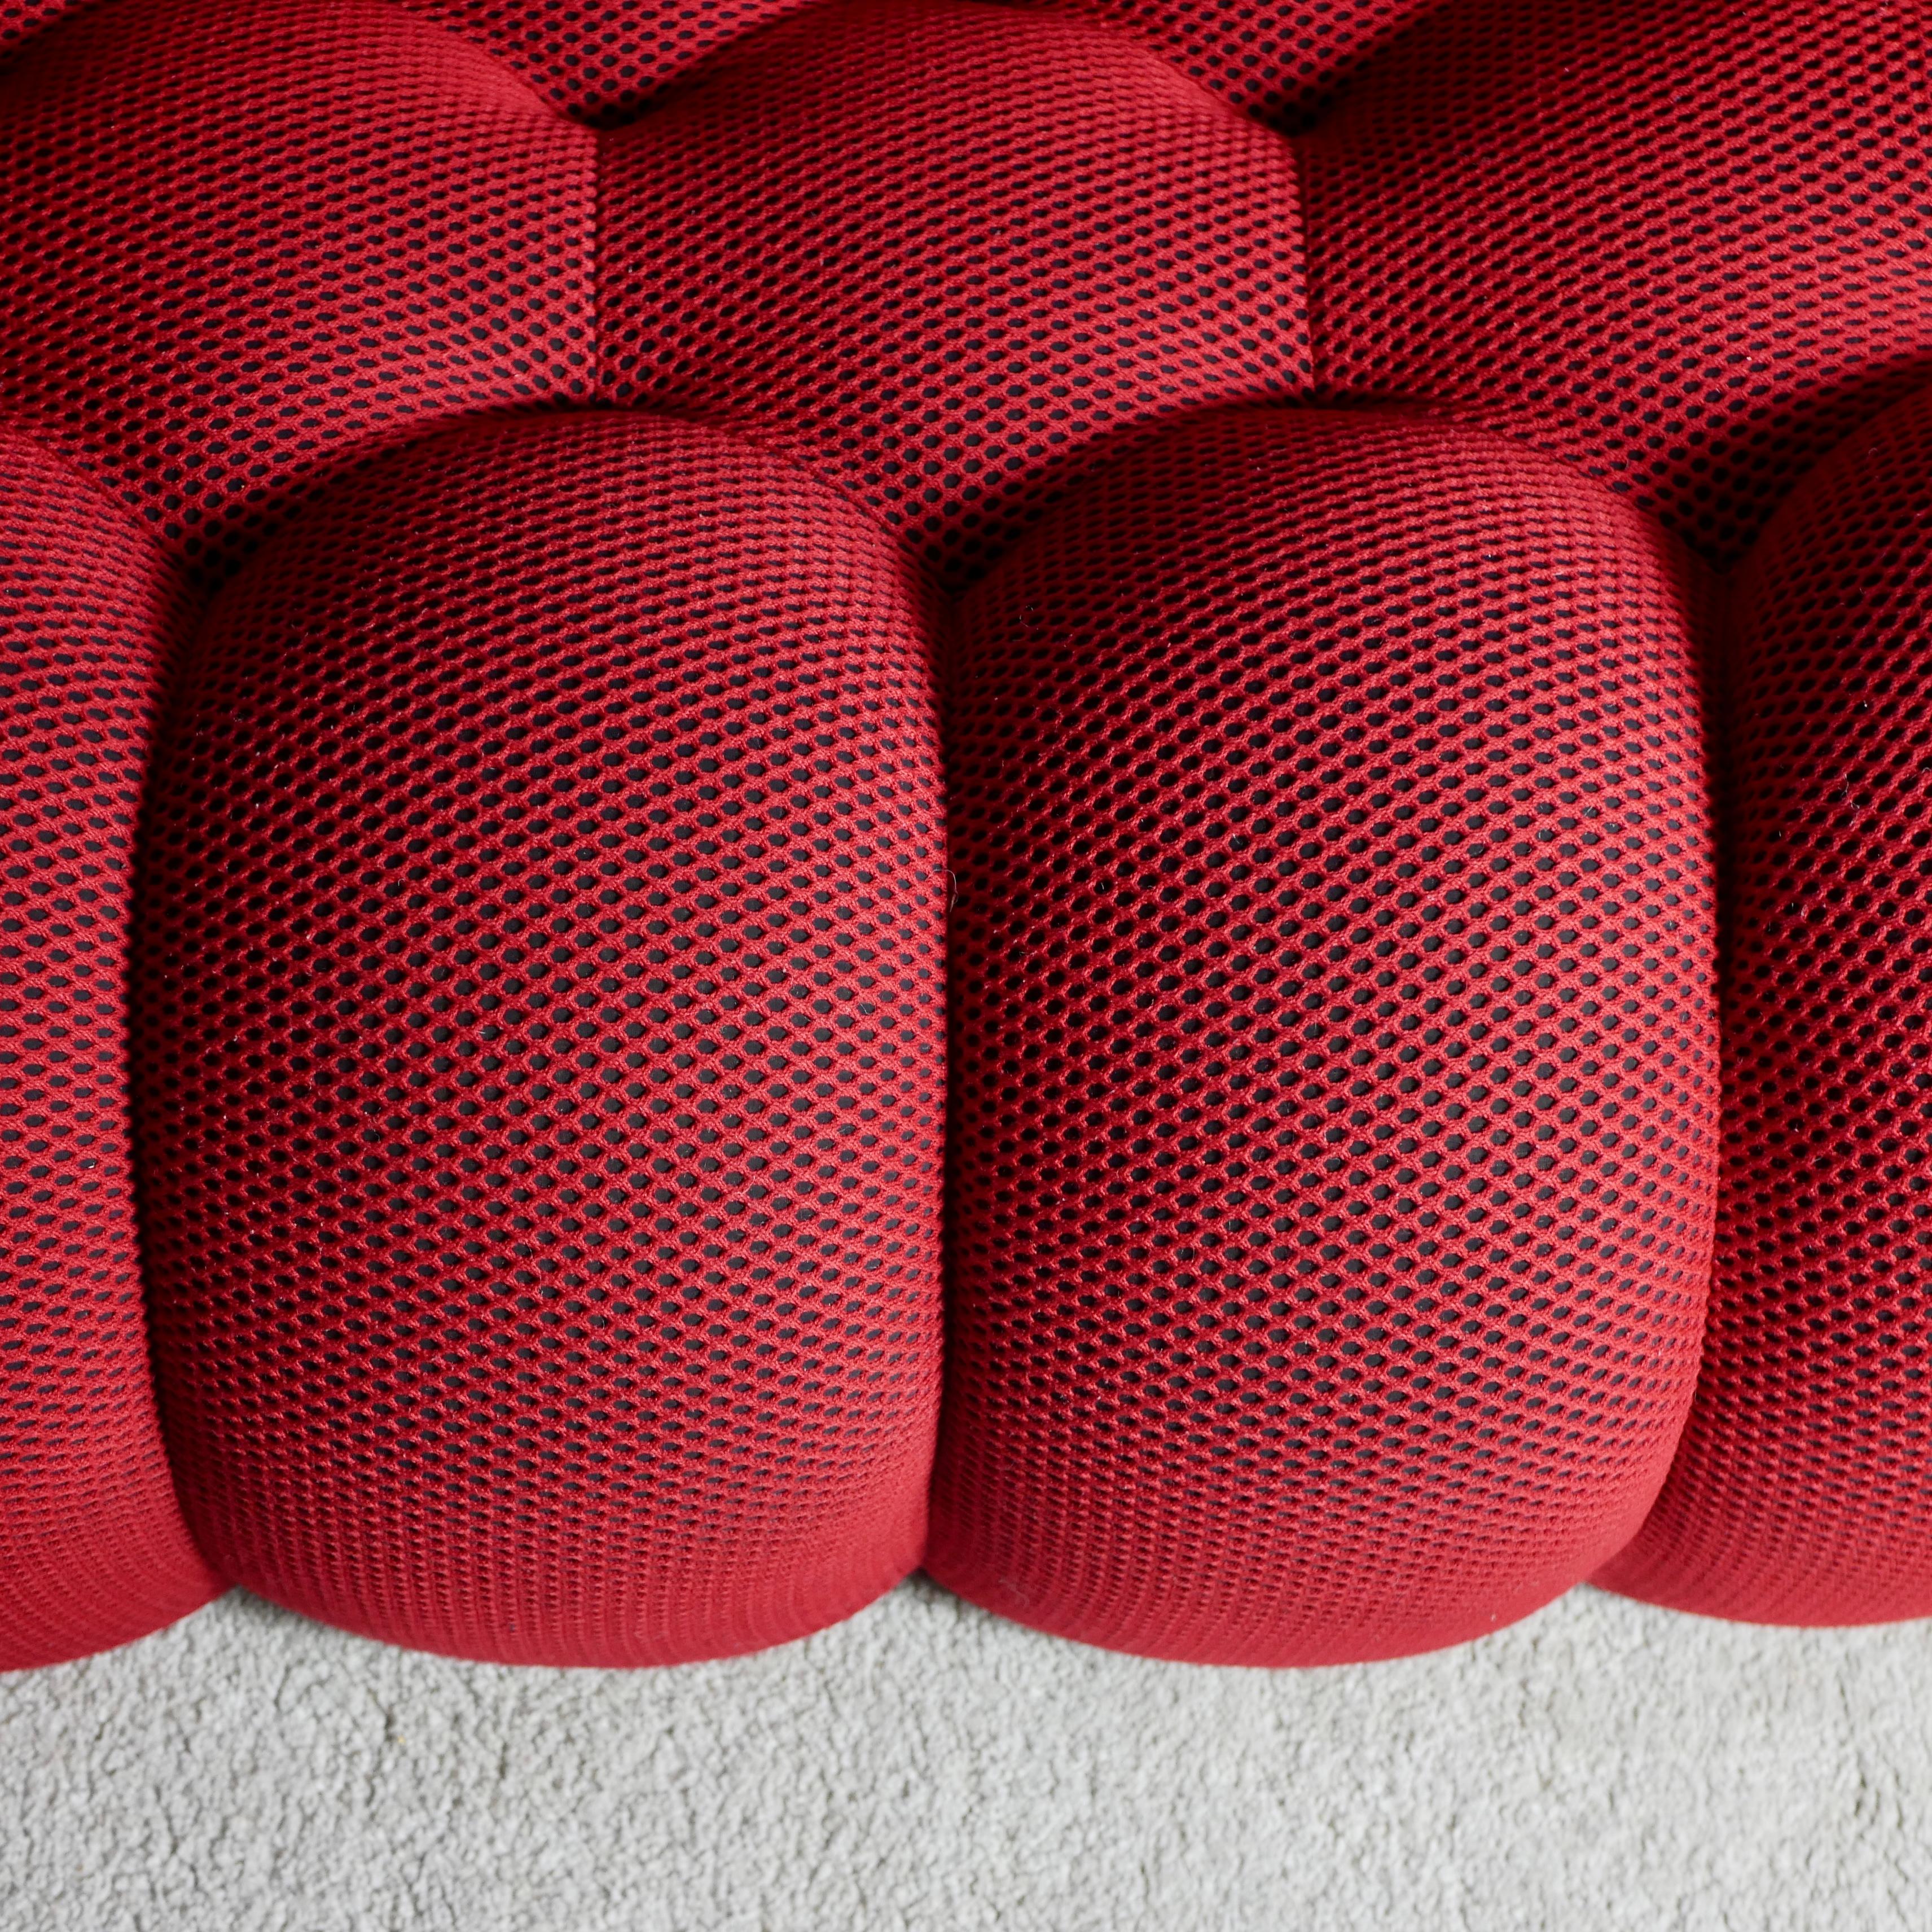 Contemporary Bubble sofa Techno 3D fabric by Sacha Lakic for Roche Bobois, 2014